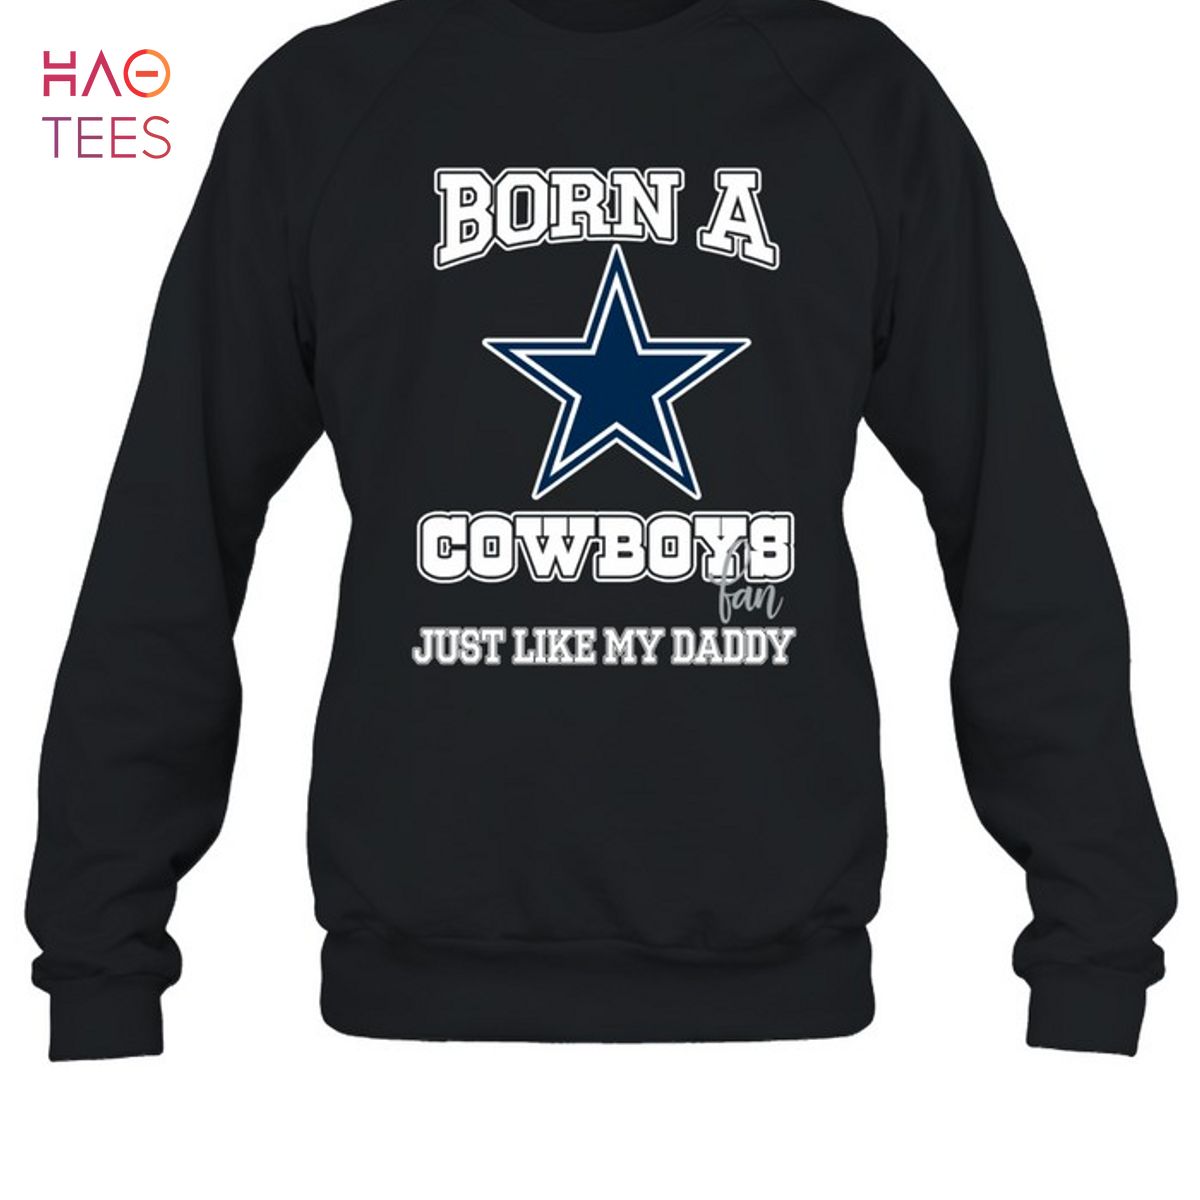 Born A Cowboys Fan Just Like My Daddy T-Shirt